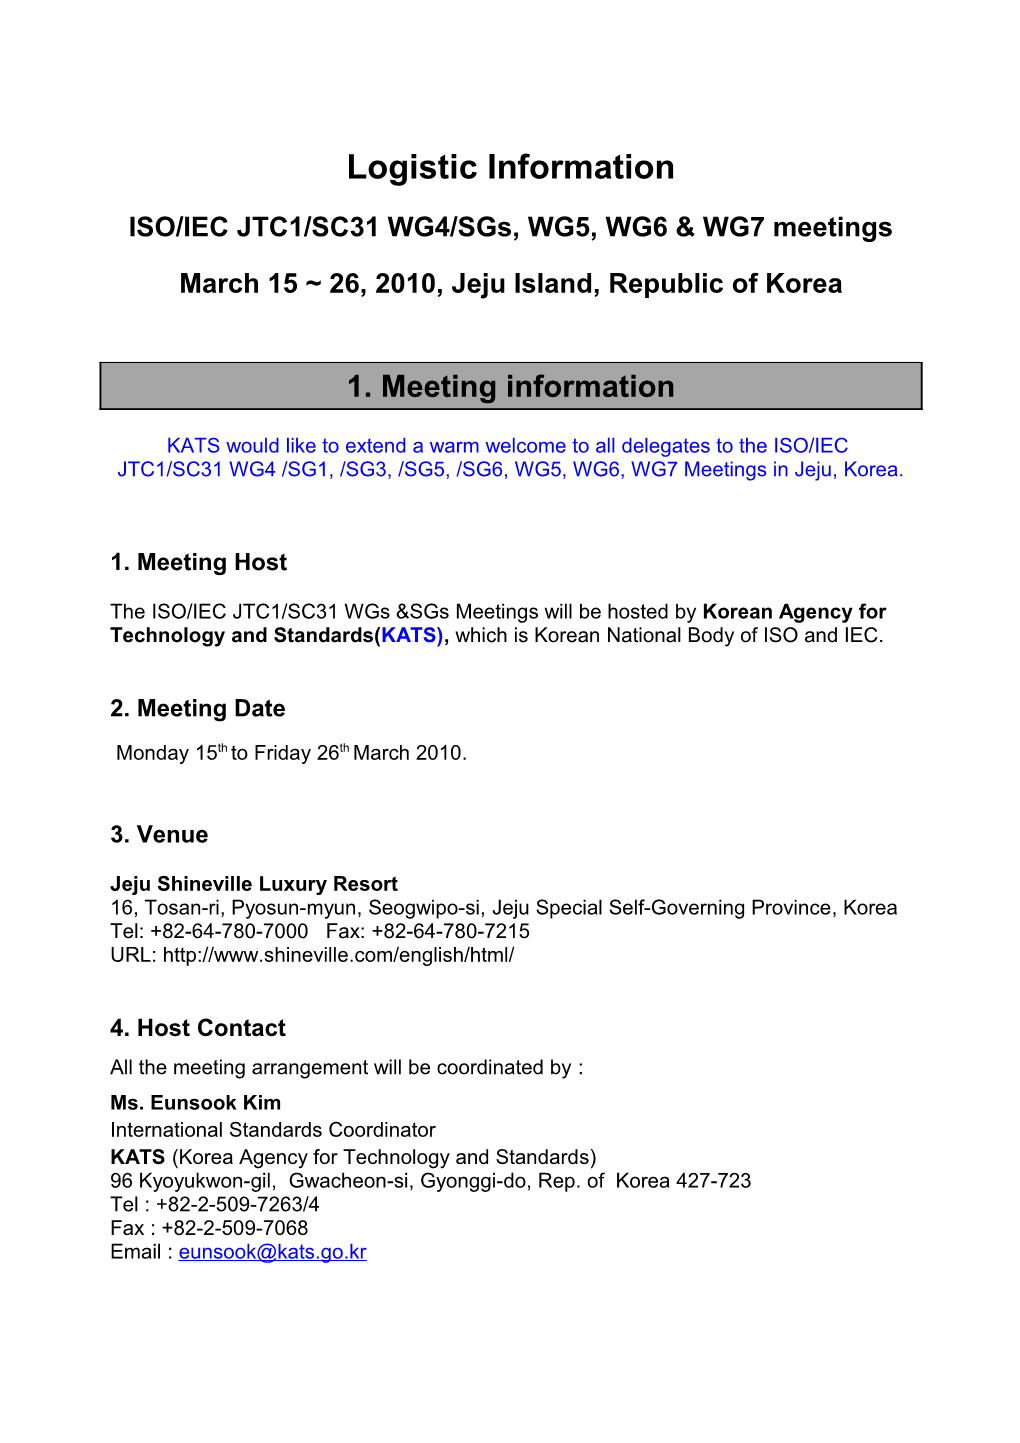 ISO/IEC JTC1/SC31 WG4/Sgs, WG5, WG6 & WG7 Meetings